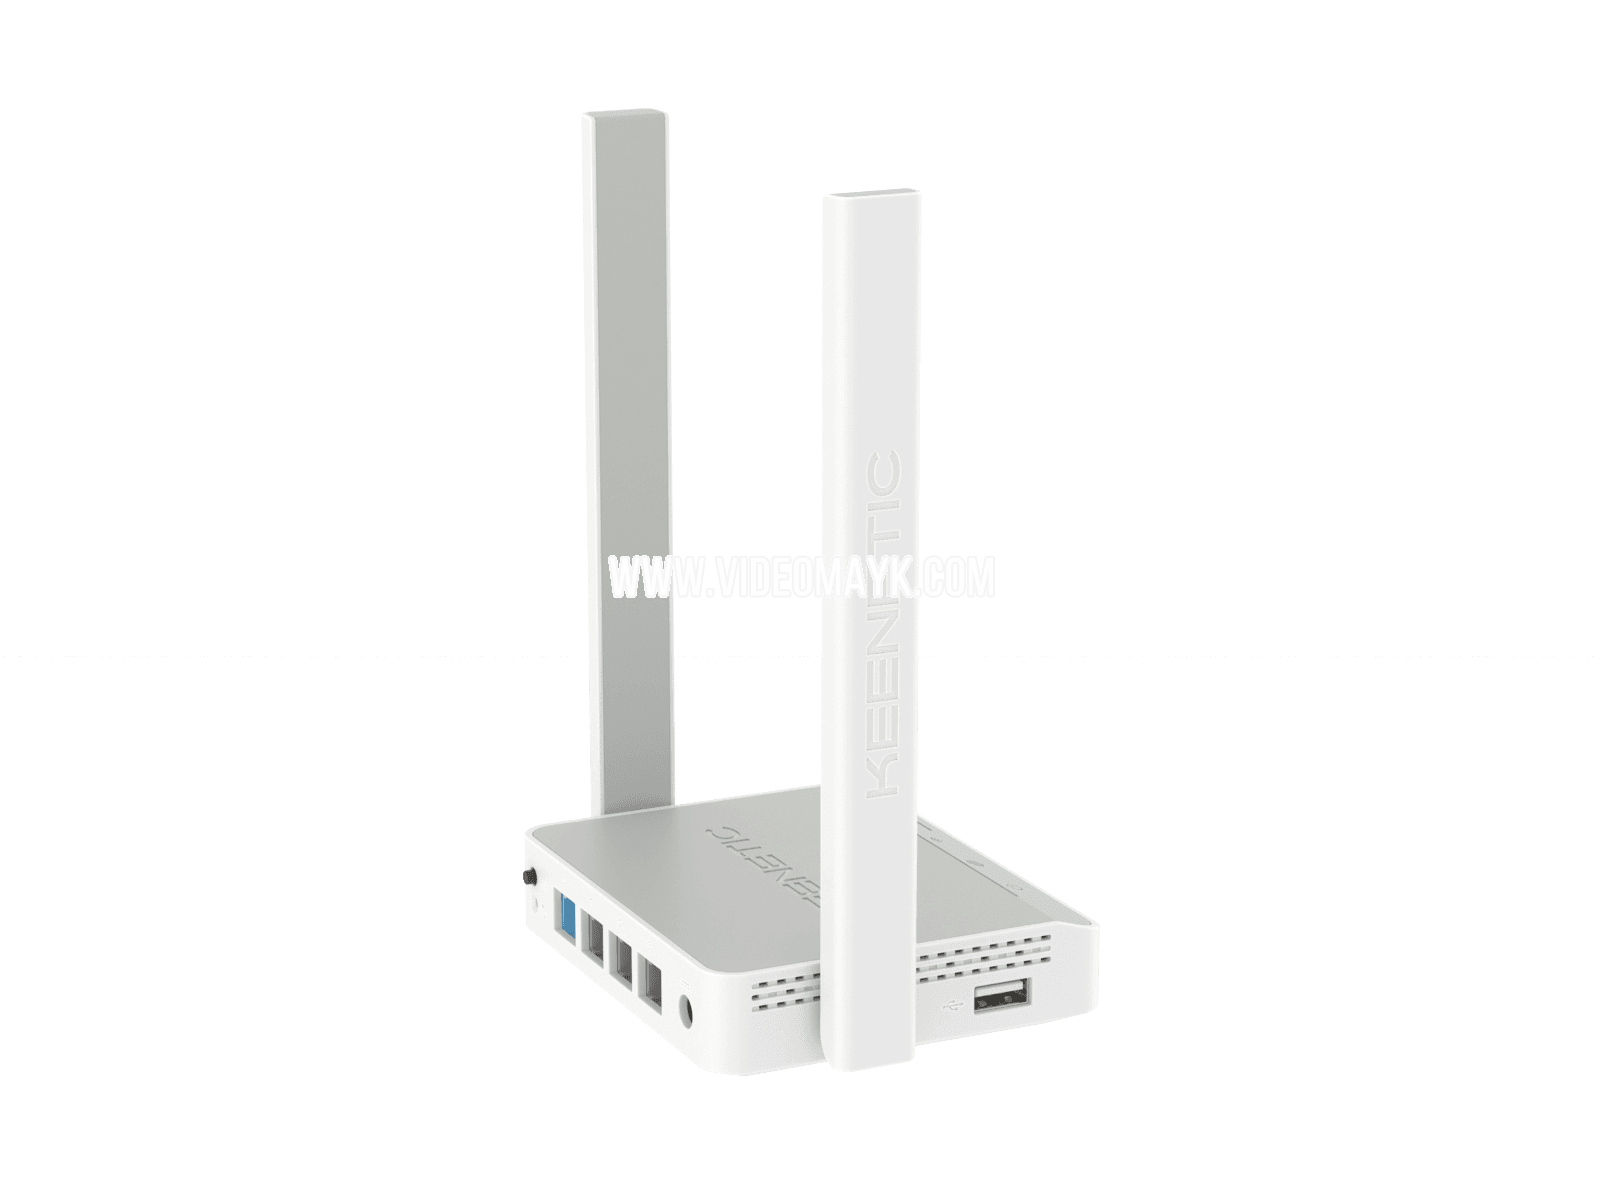 Keenetic 4G Интернет-центр для USB-модемов LTE/4G/3G с Mesh Wi-Fi N300 и 4-портовым Smart-коммутатором